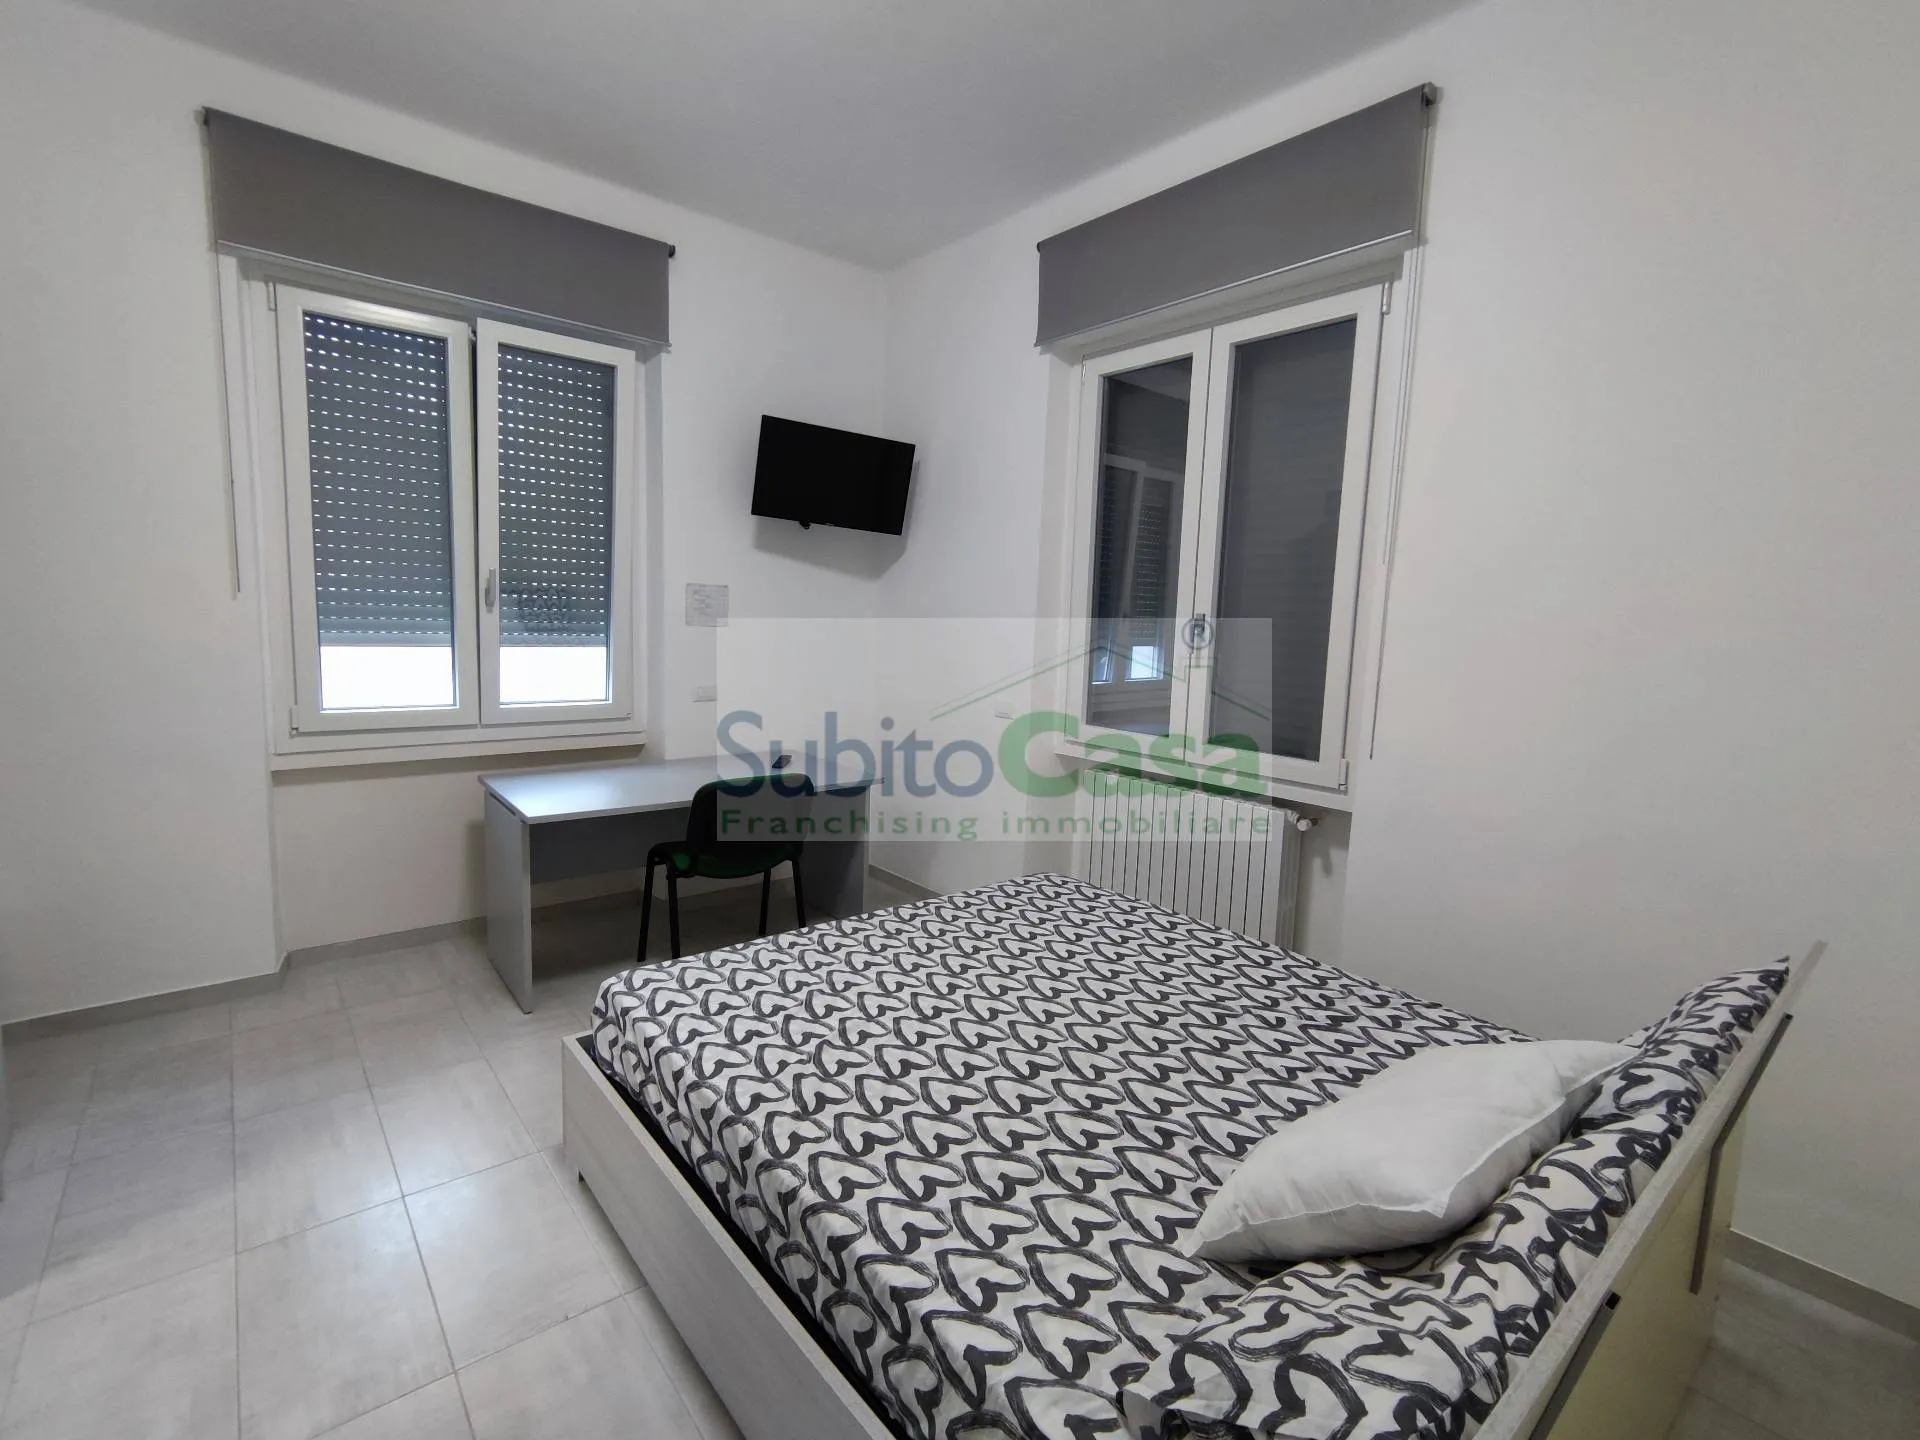 Immagine per Appartamento in affitto a Chieti Via De Virgiliis